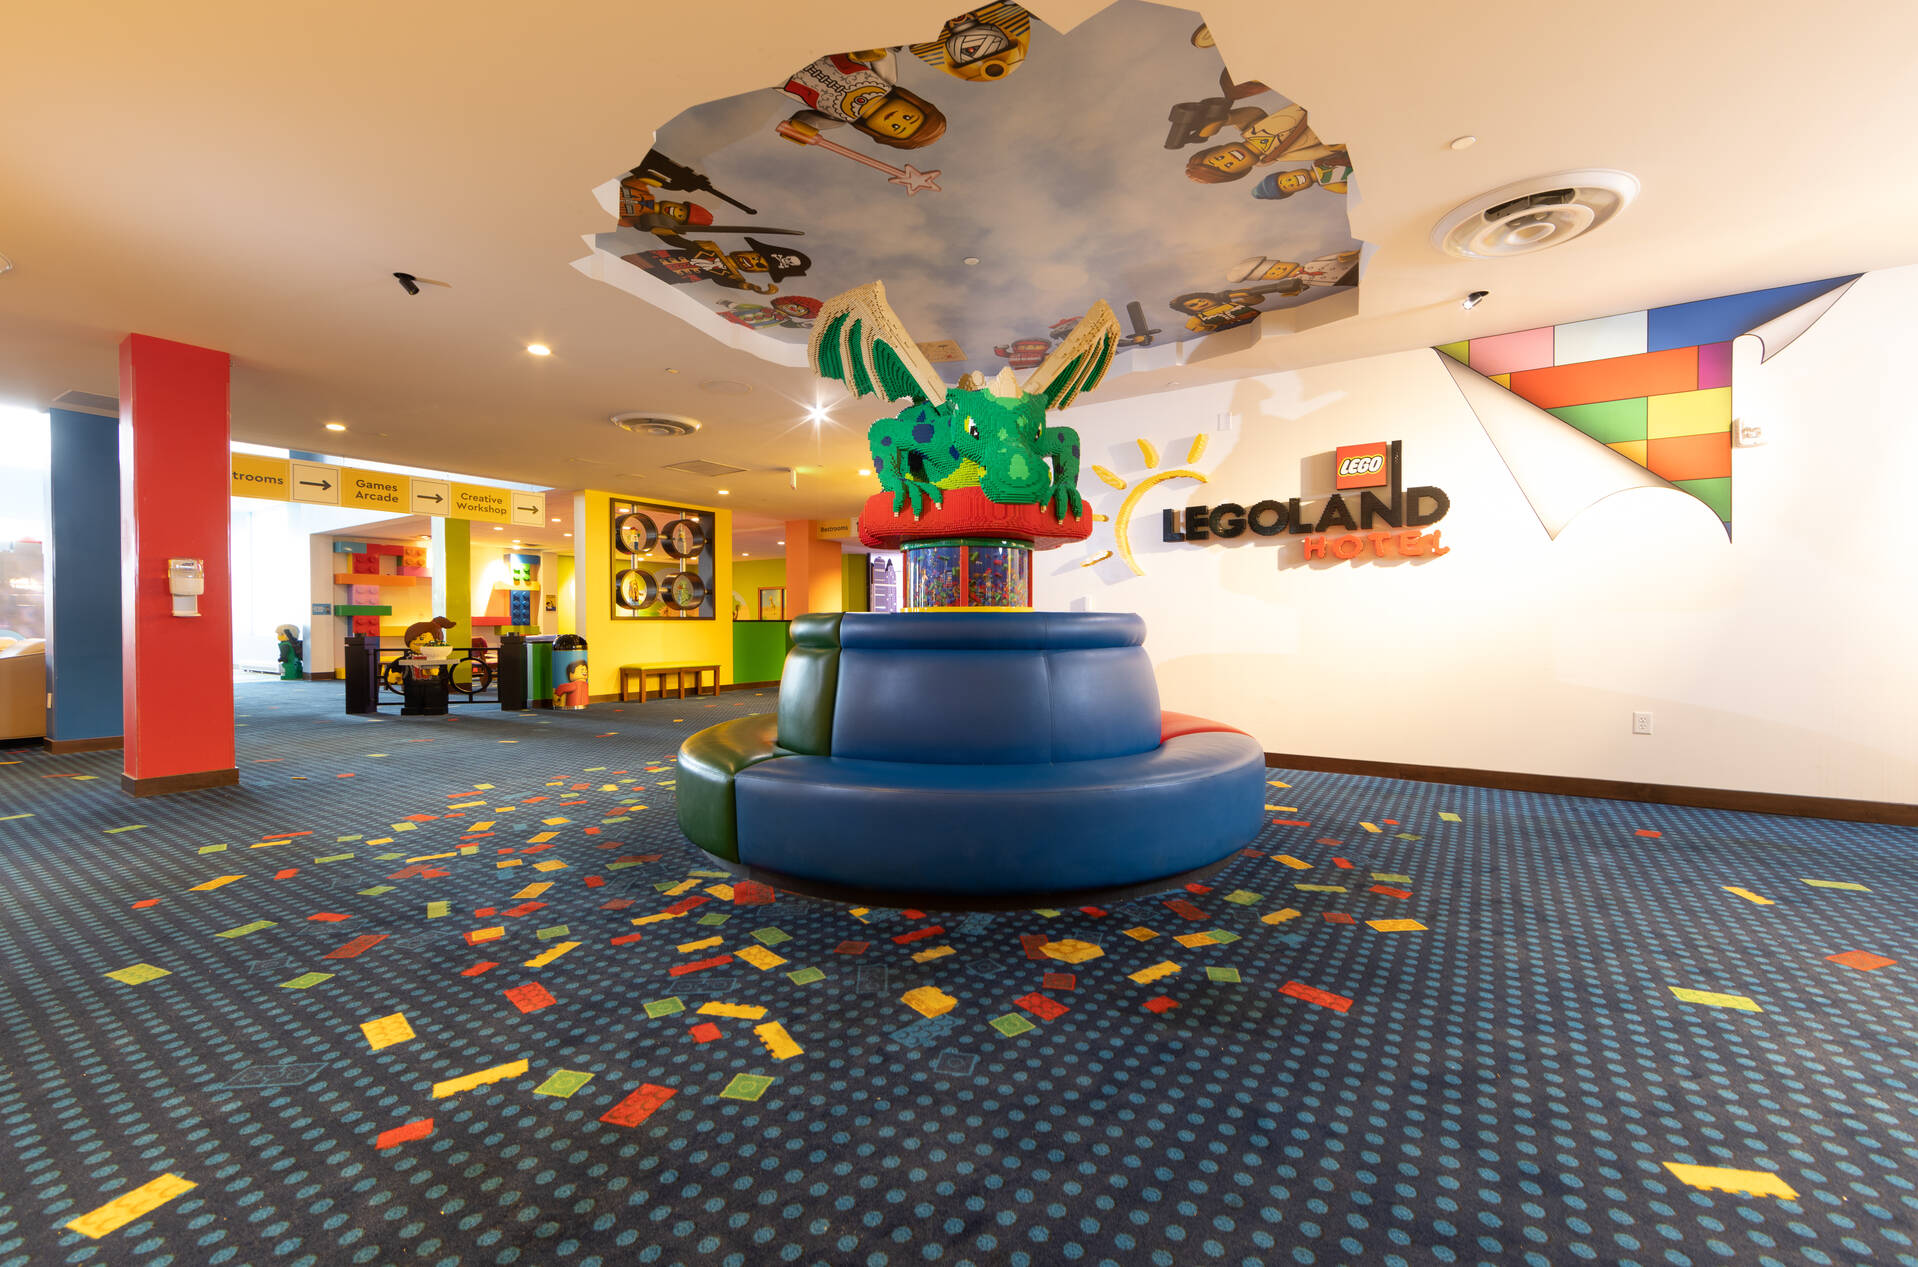 LEGO Dragon in the LEGOLAND Hotel Lobby